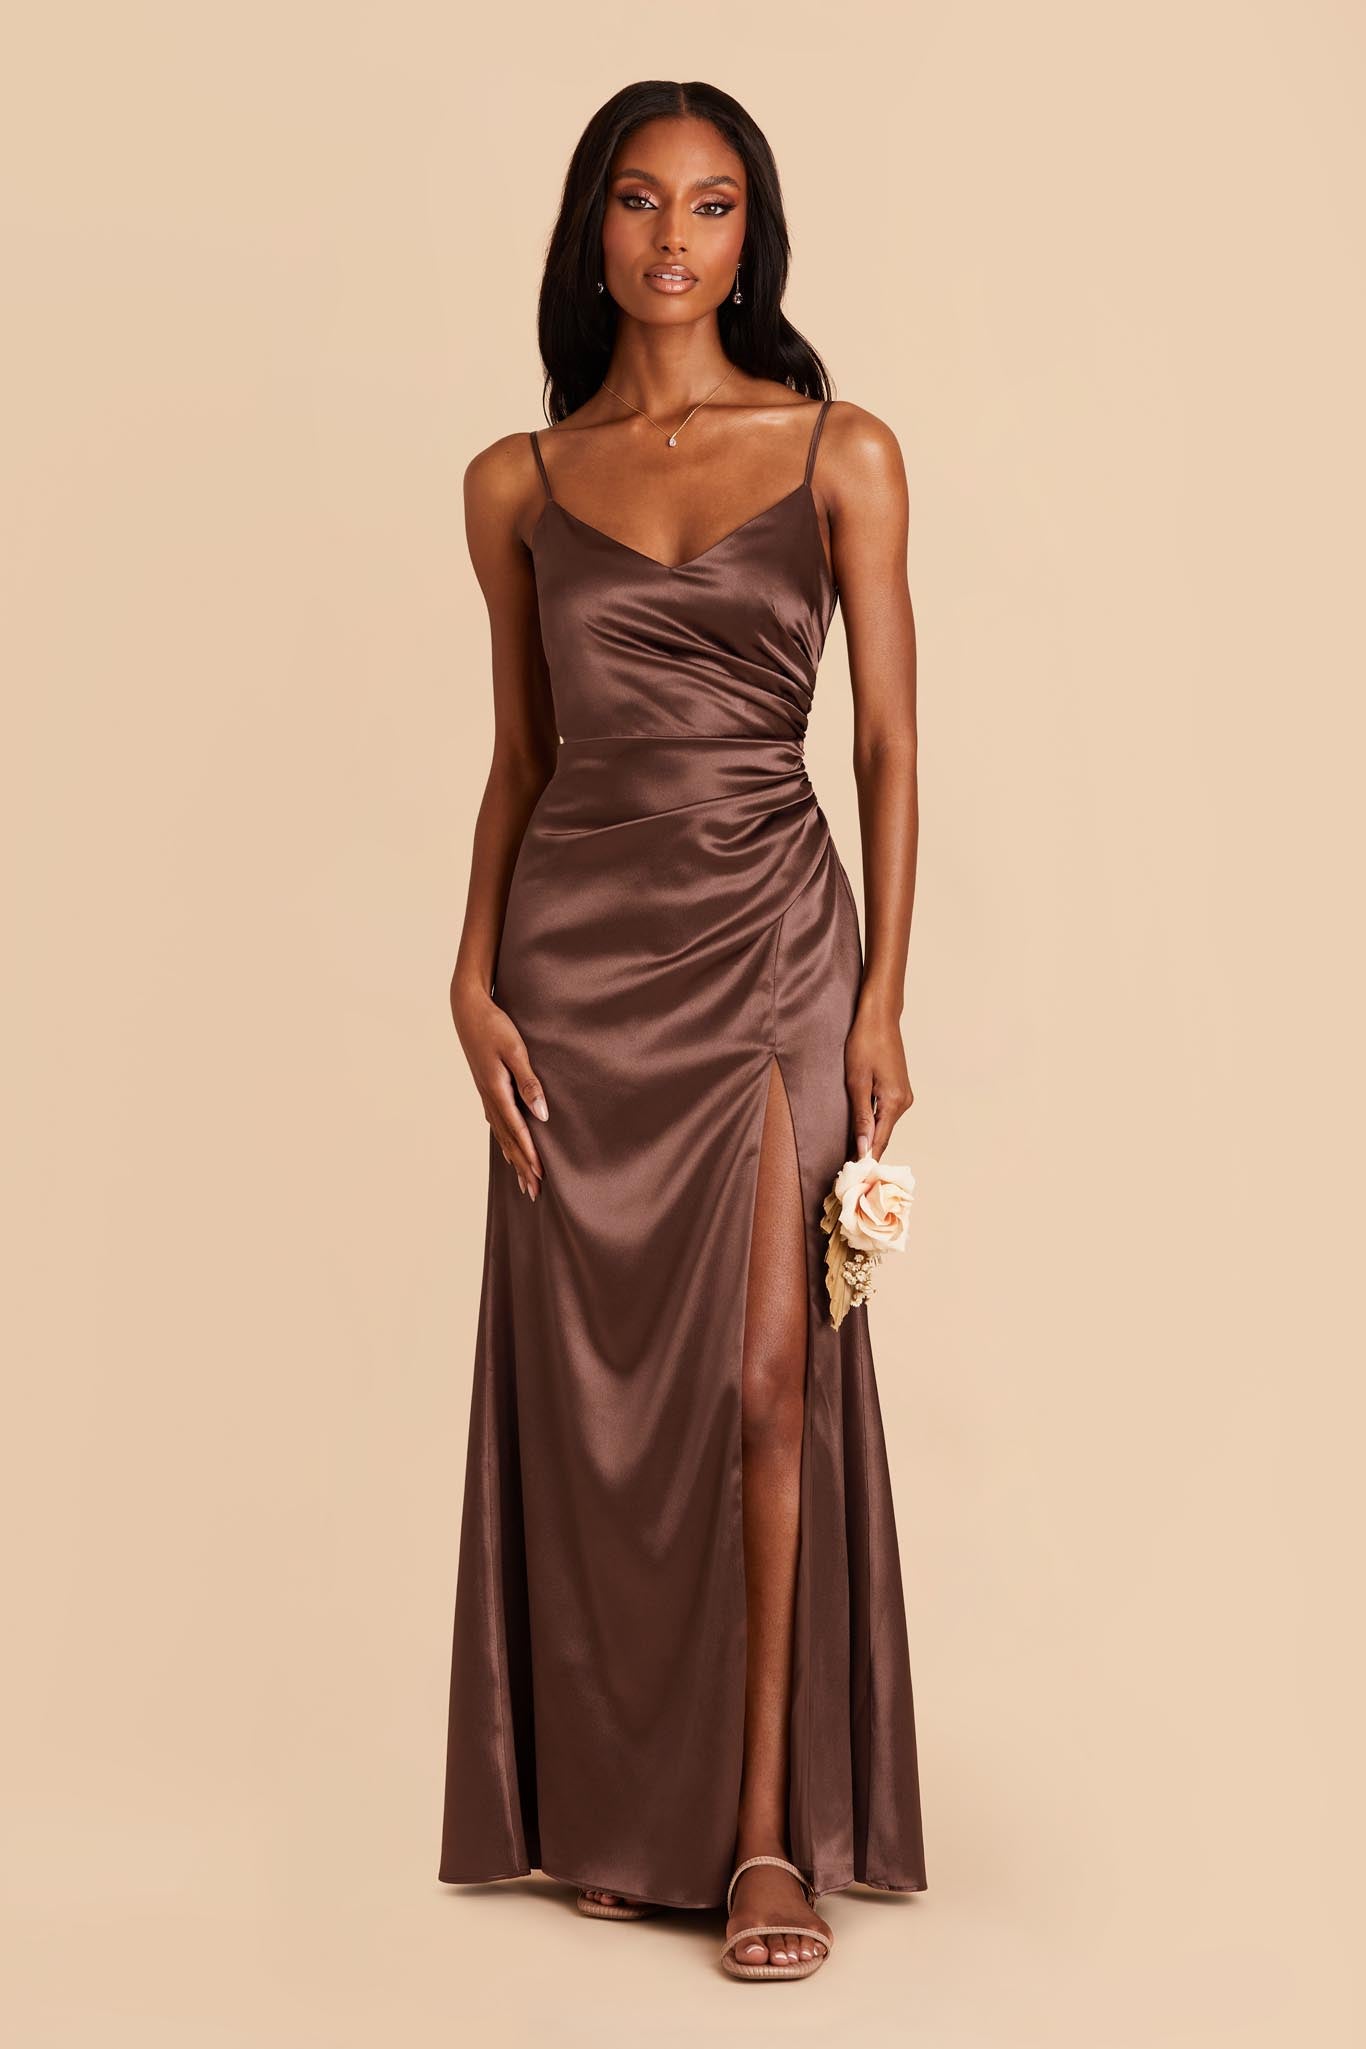 Chocolate Brown Catherine Shiny Satin Dress by Birdy Grey